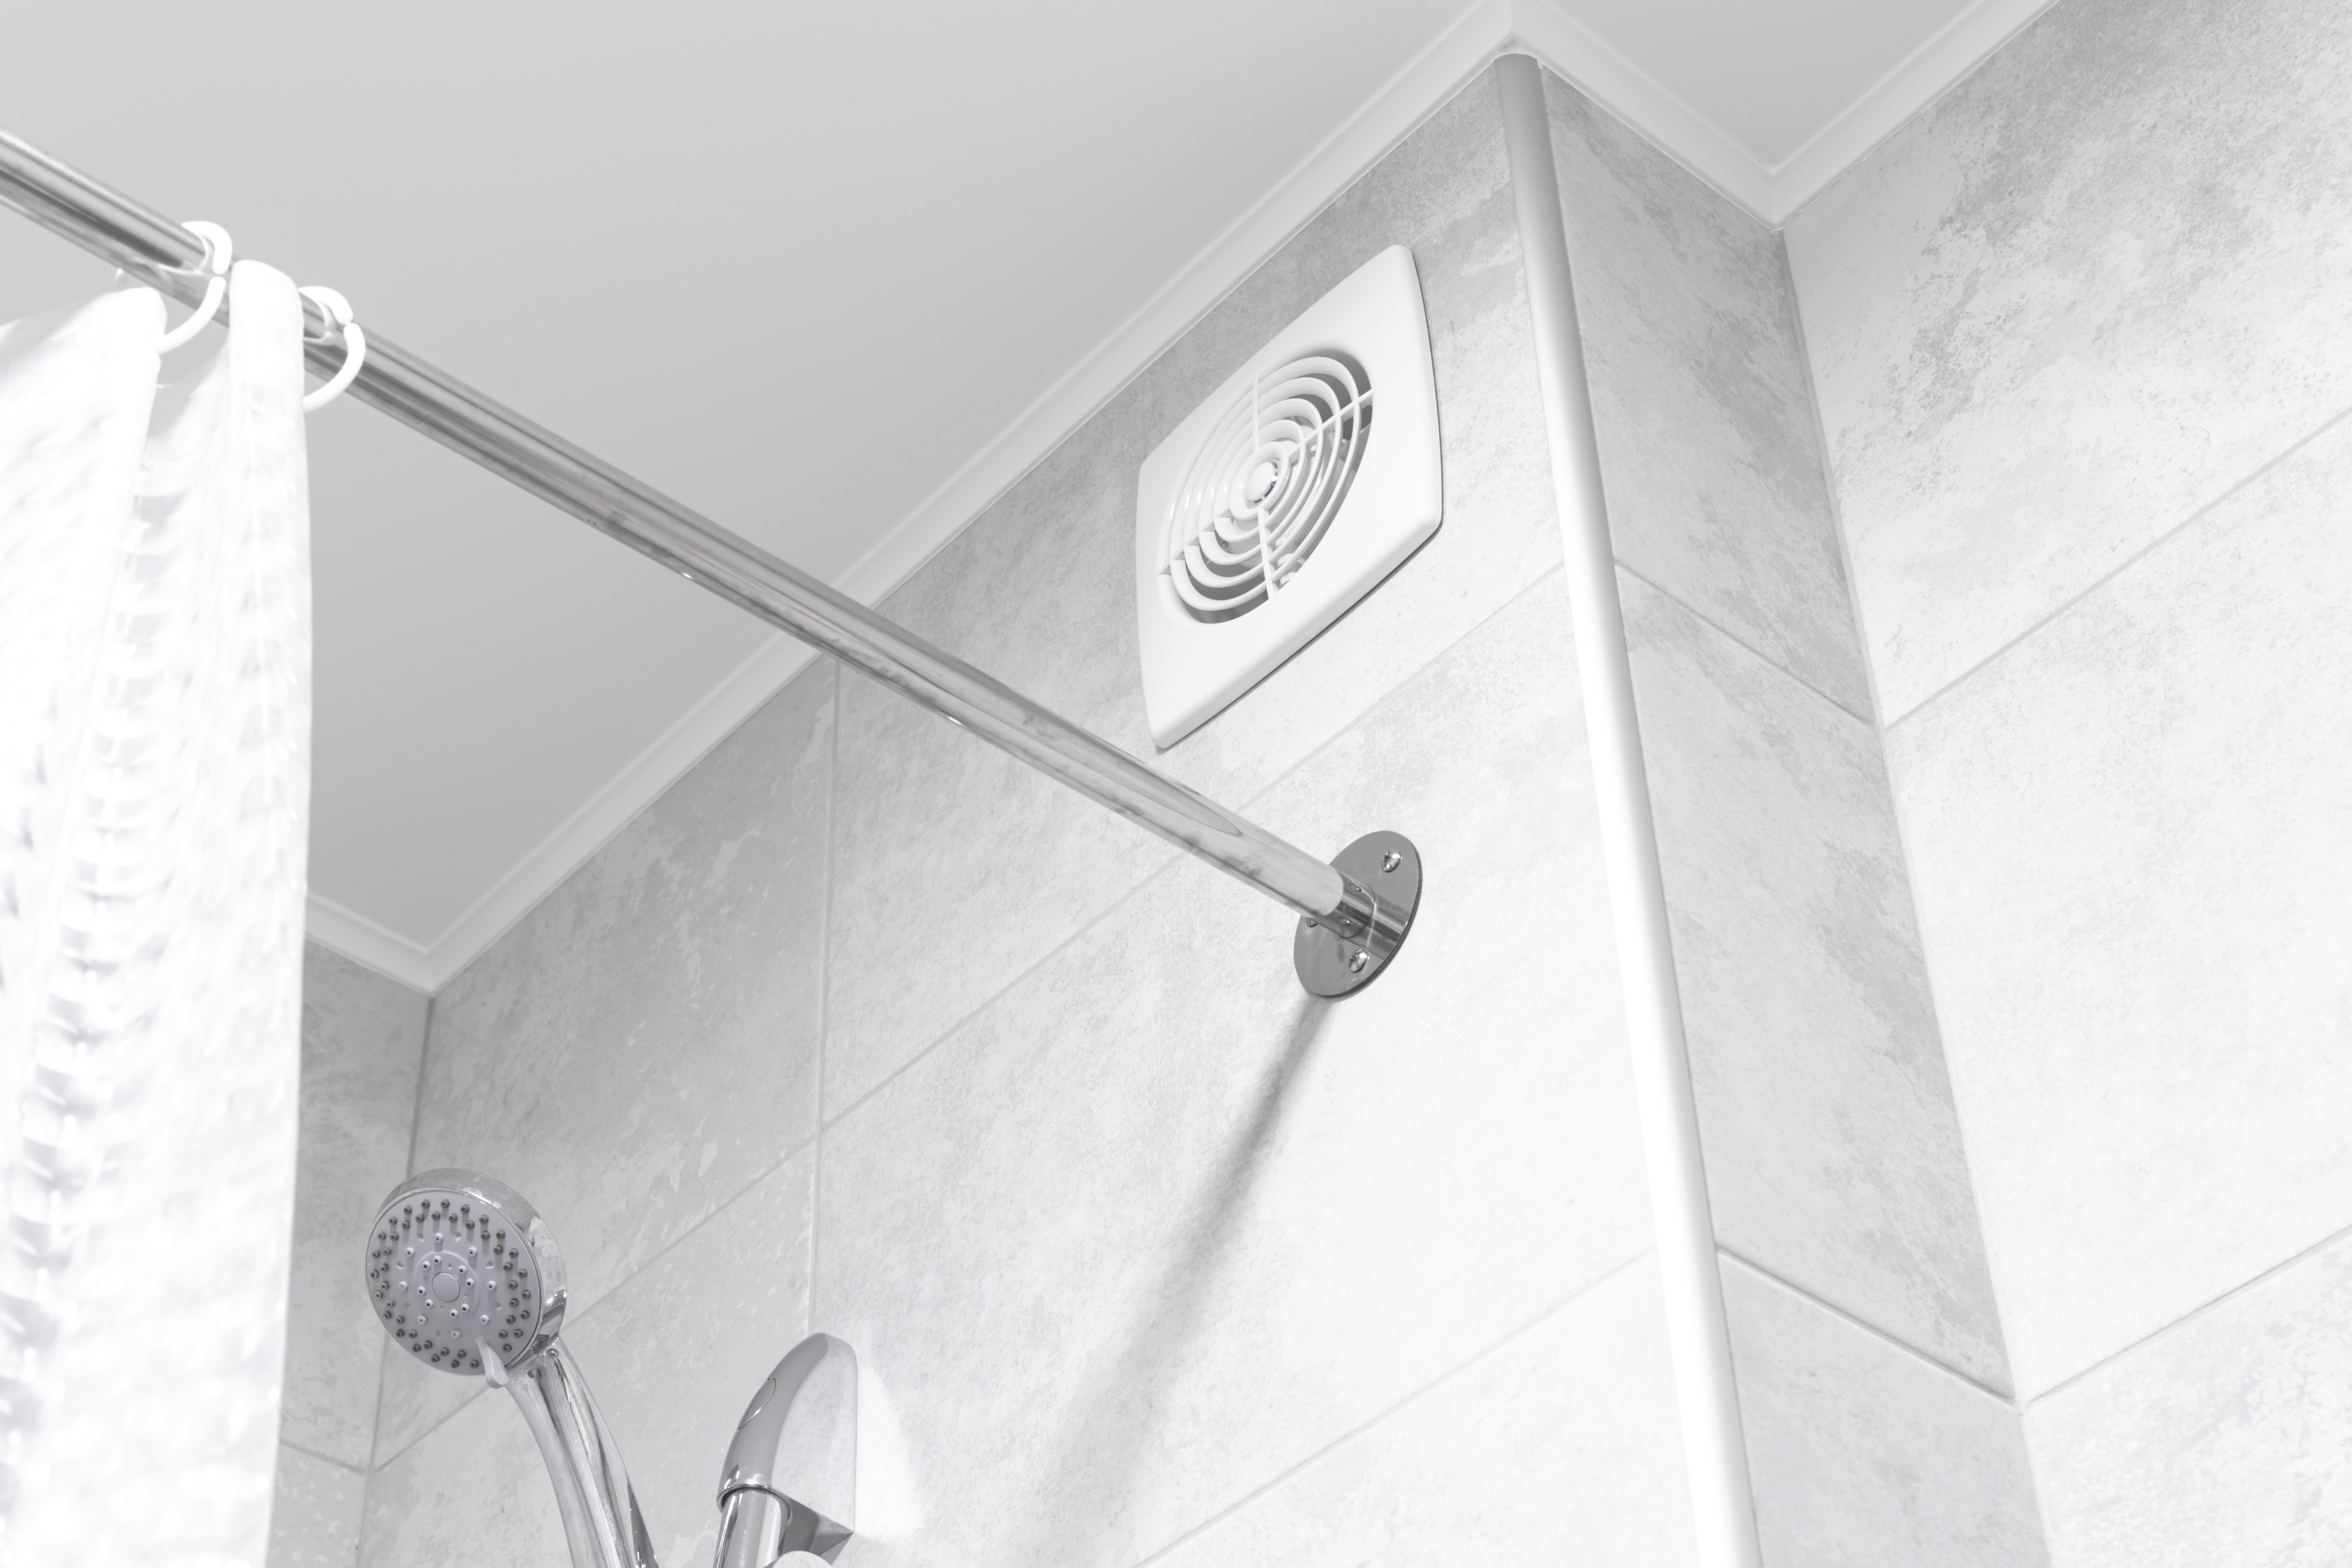 Bathroom ventilation fan | Source: Shutterstock